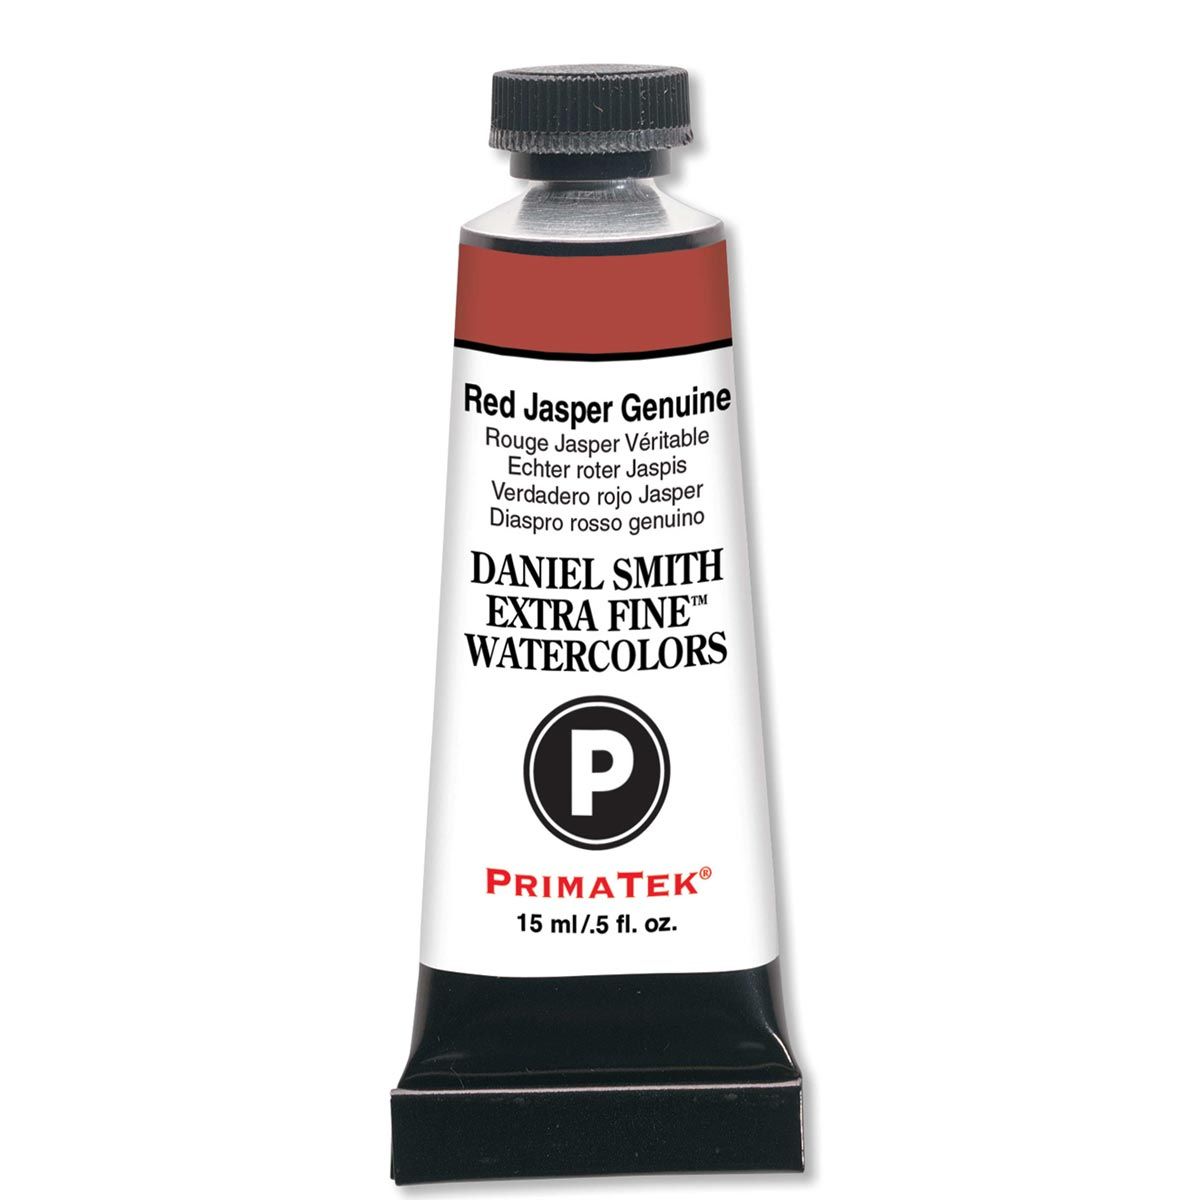 Daniel Smith PrimaTek Watercolour Red Jasper Genuine 15ml